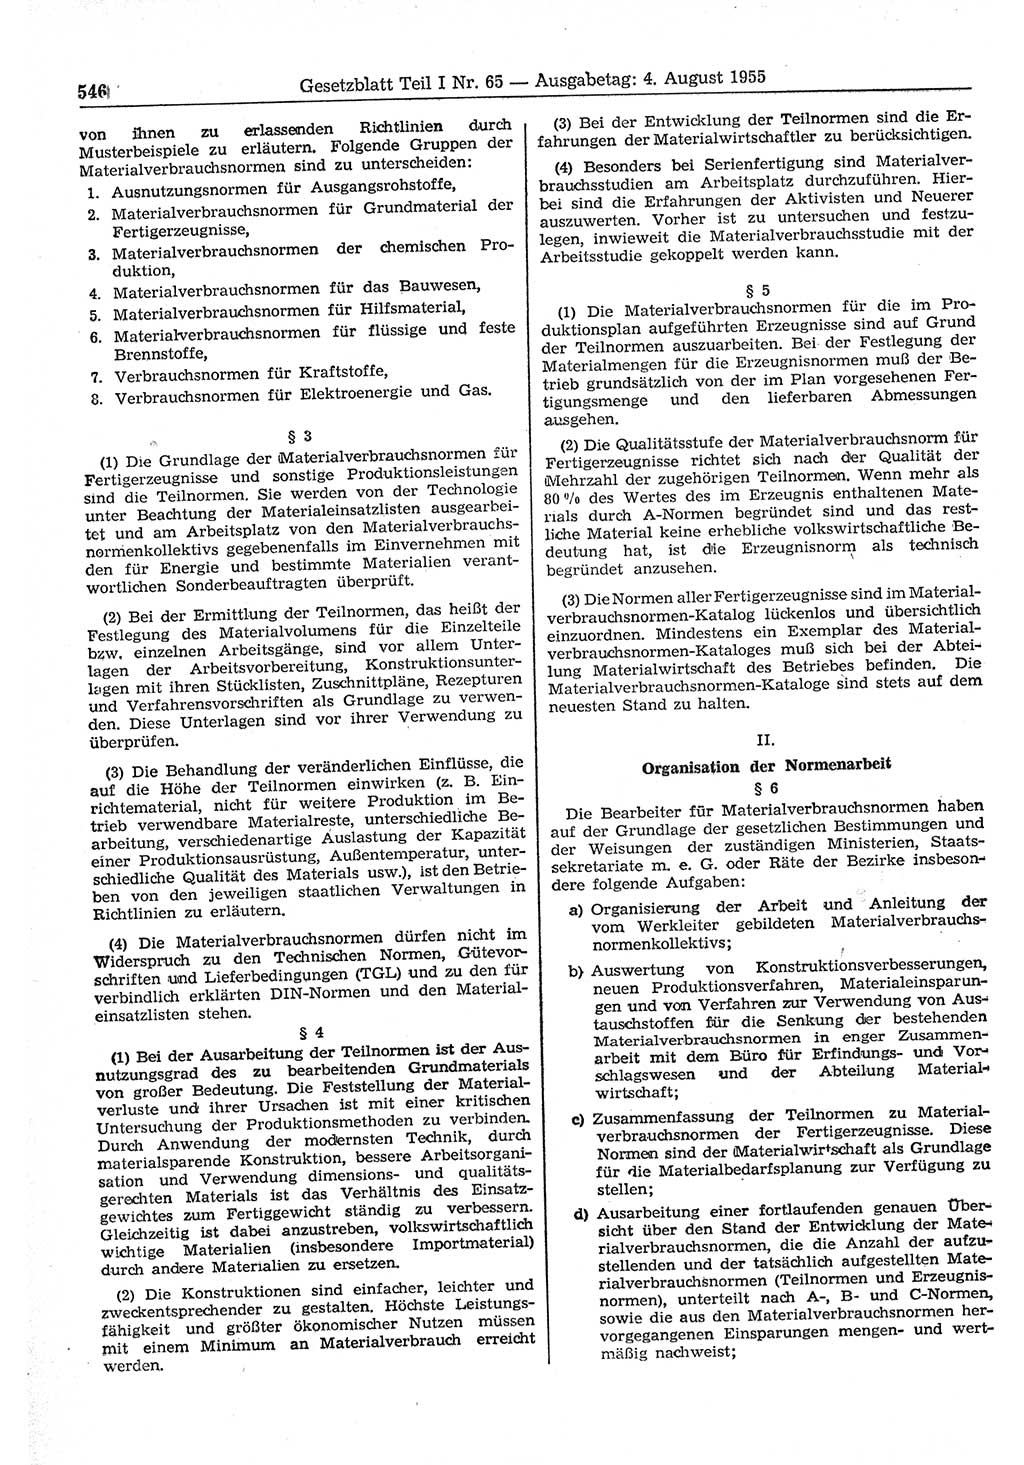 Gesetzblatt (GBl.) der Deutschen Demokratischen Republik (DDR) Teil Ⅰ 1955, Seite 546 (GBl. DDR Ⅰ 1955, S. 546)